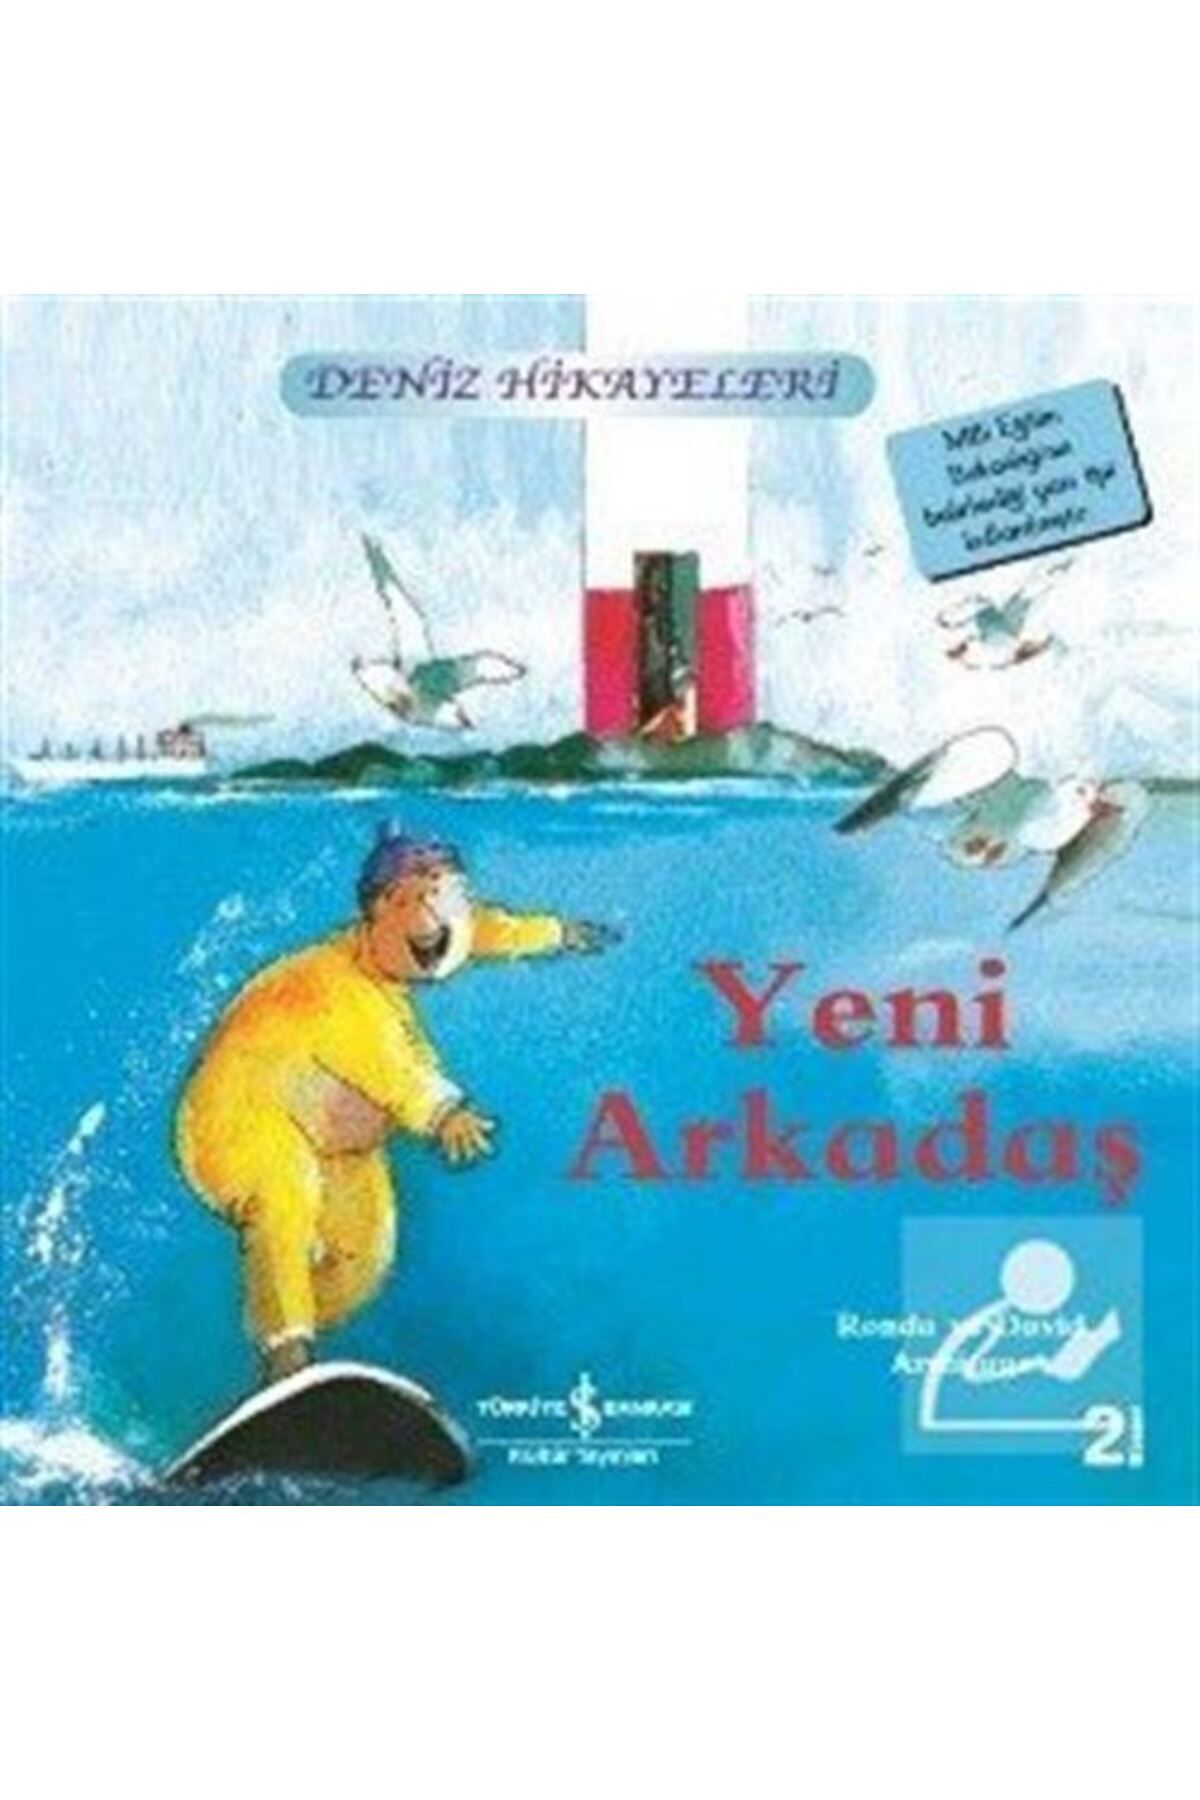 Türkiye İş Bankası Kültür Yayınları Yeni Arkadaş / Deniz Hikayeleri Ilk Okuma Kitaplarım (DİK YAZI)